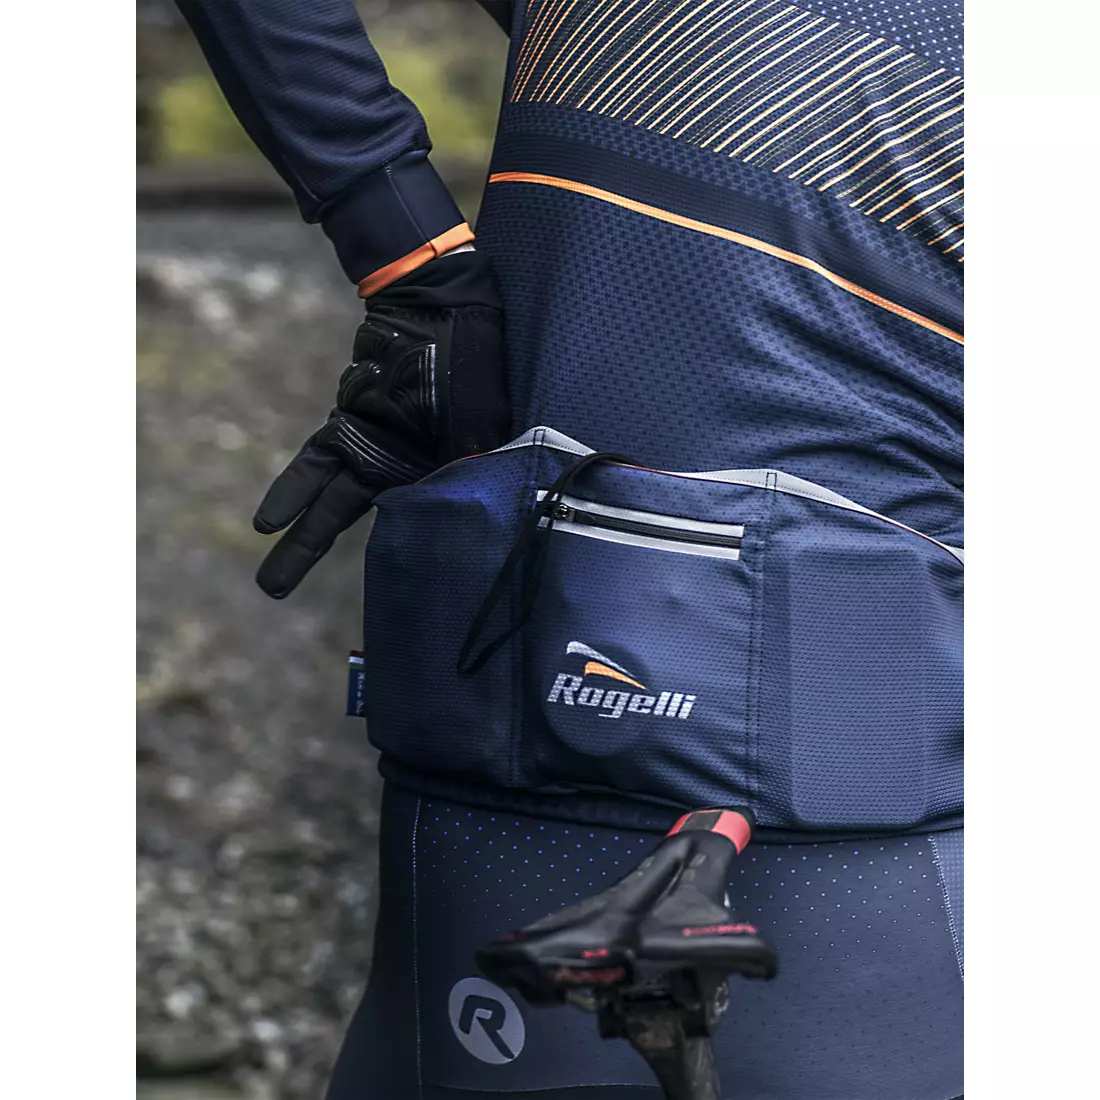 ROGELLI RITMO pánský cyklistický dres, tmavě modro-oranžový